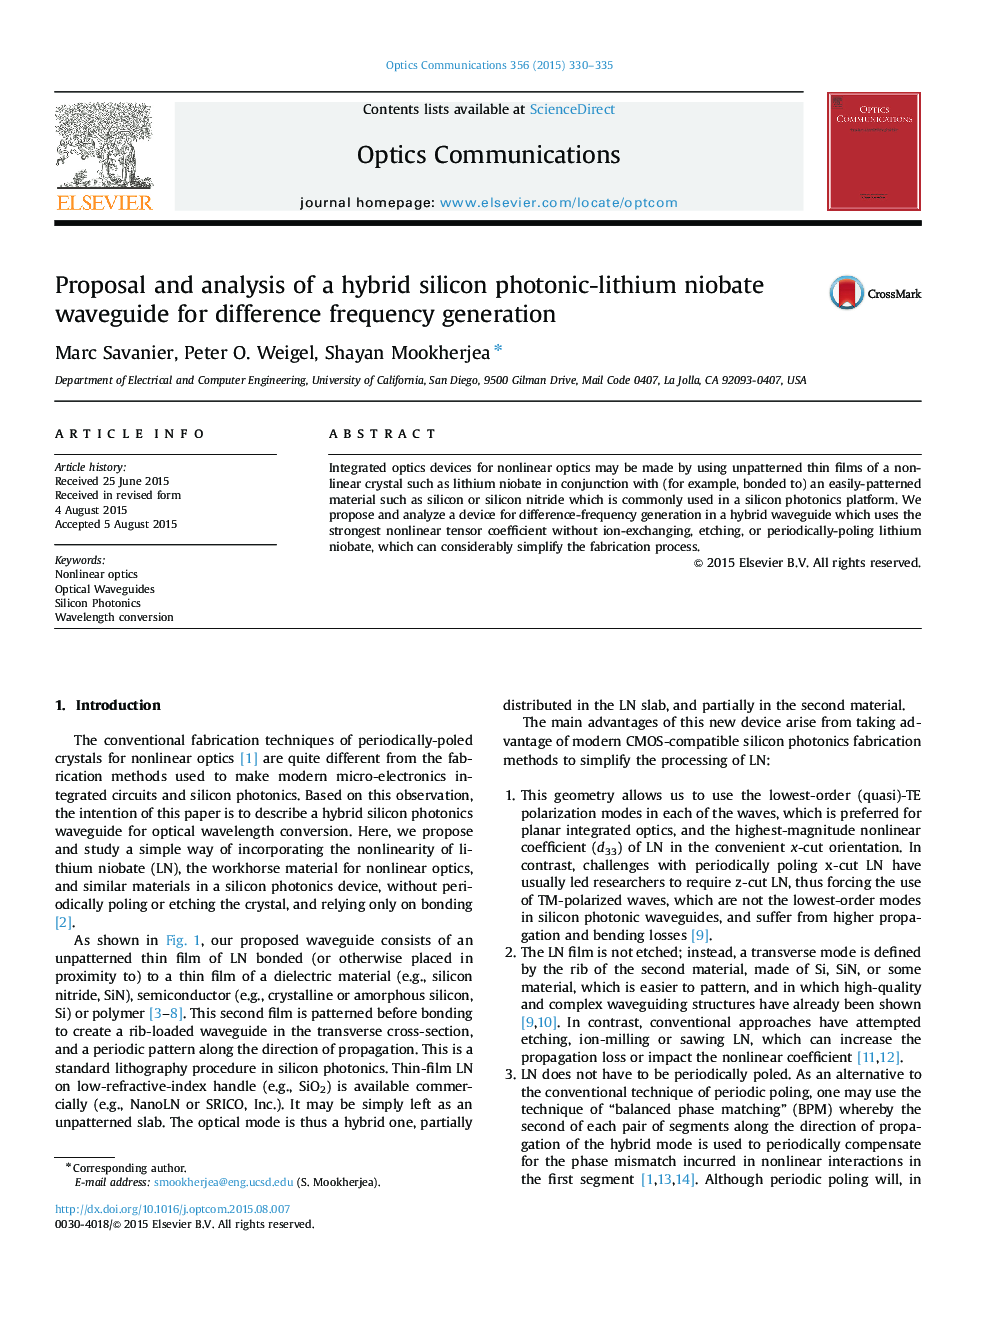 پیشنهاد و تجزیه و تحلیل یک موجبر نوری سیلیکون فوتونی - لیتیوم هیبریدی برای تولید فرکانس 